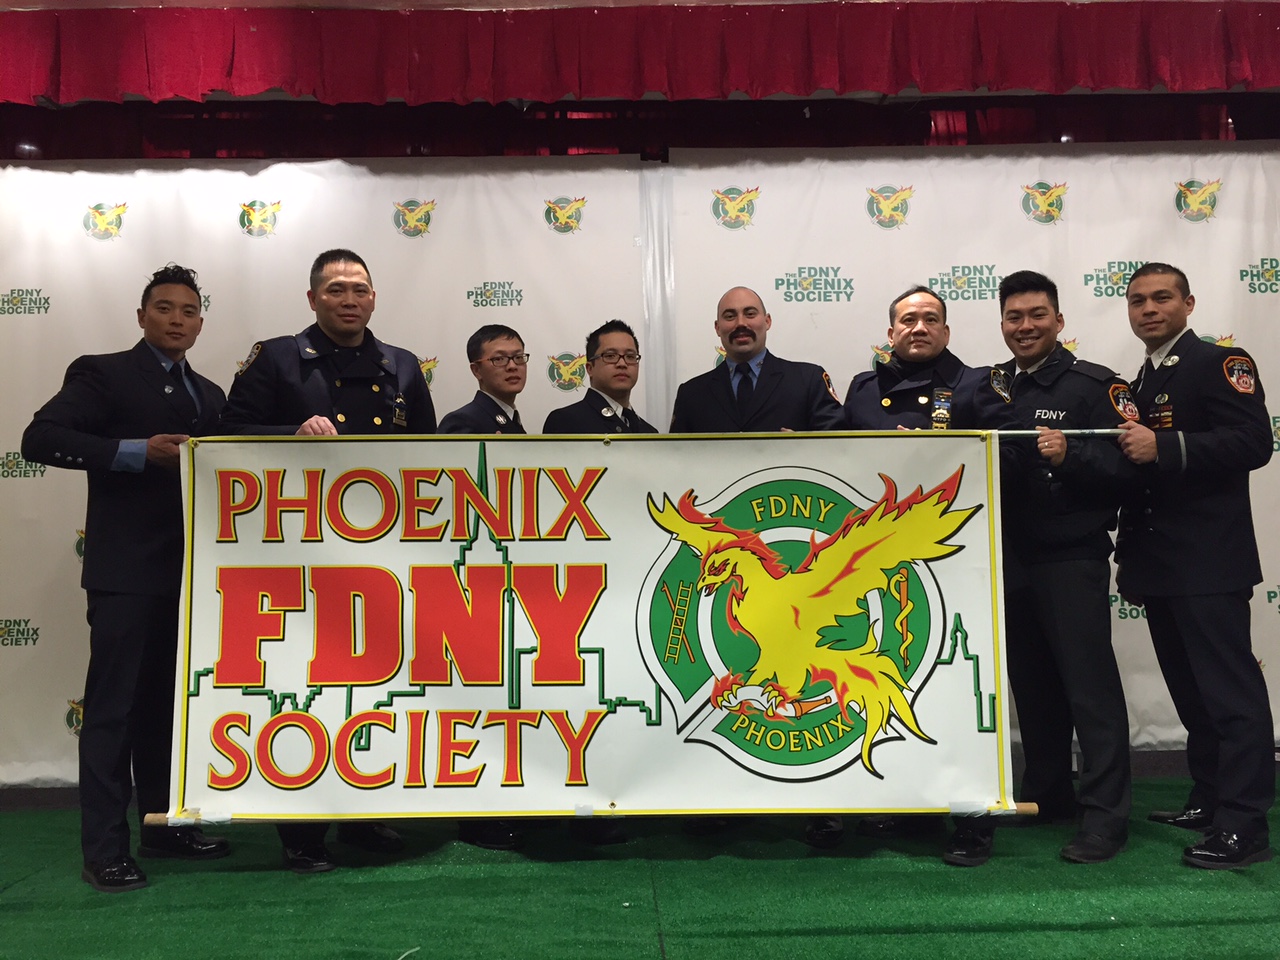 The FDNY Phoenix Society 